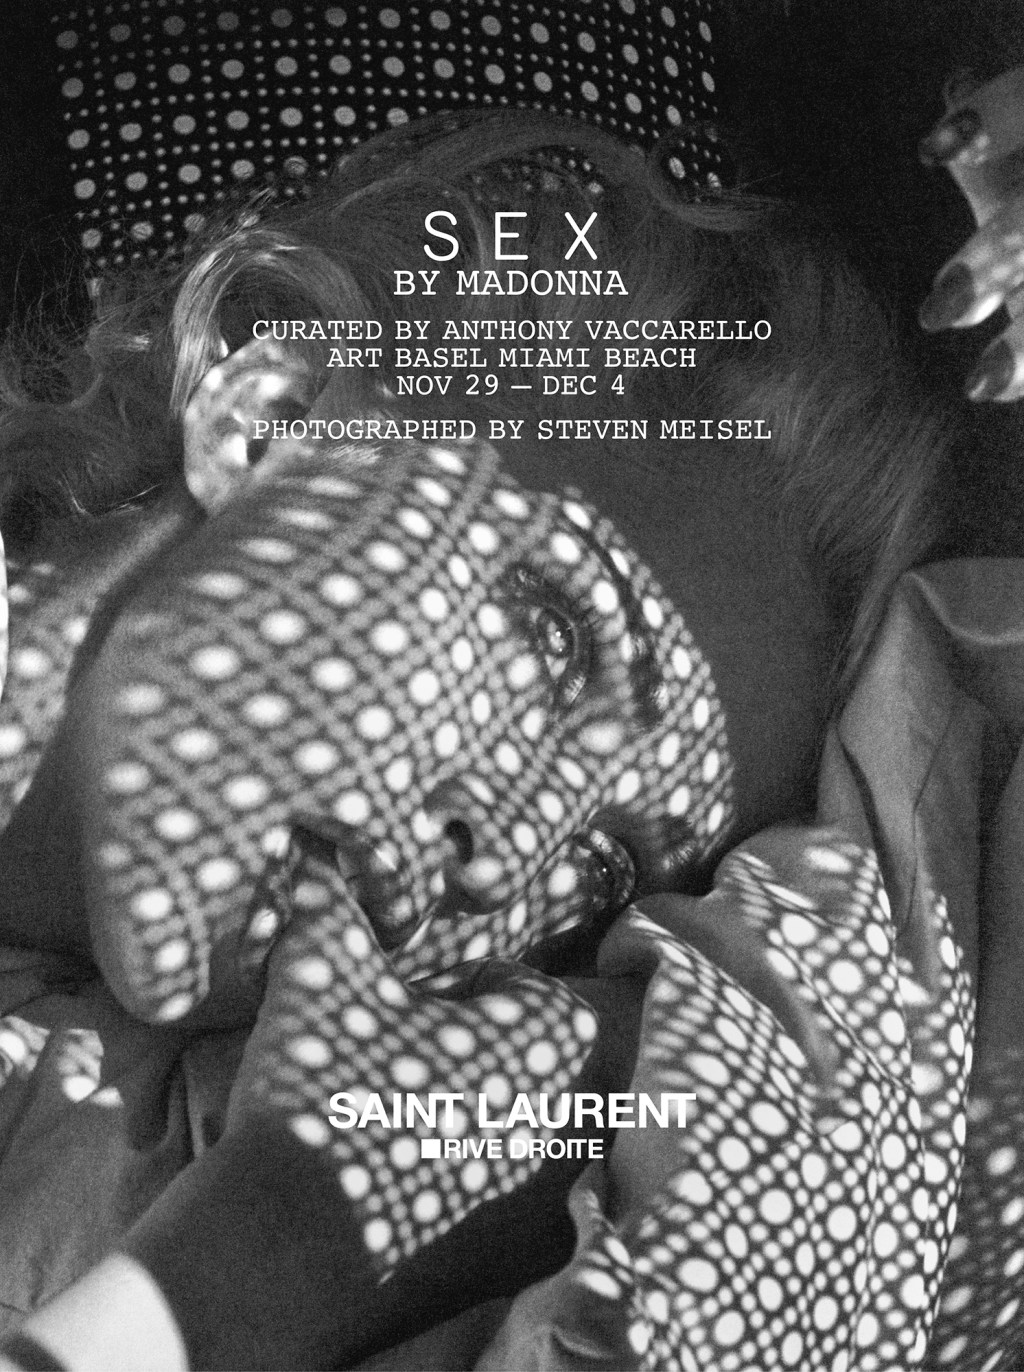 Art Basel Miami: Saint Laurent apresenta a mostra madonna